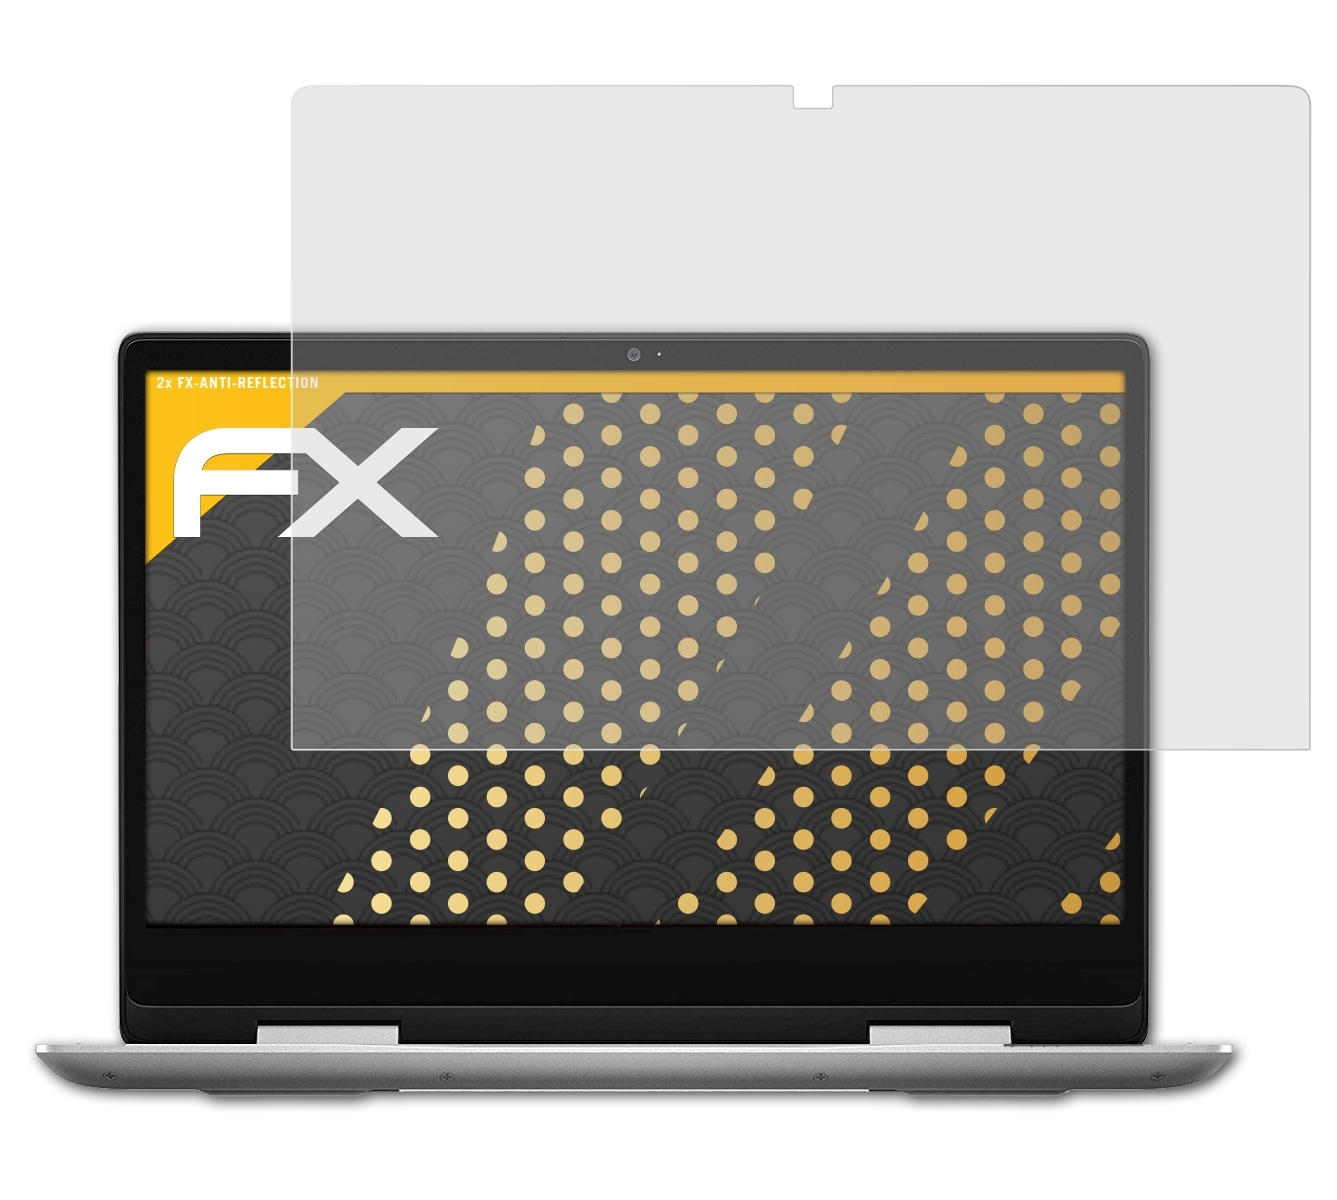 14 5000) Displayschutz(für ATFOLIX 2x Dell Inspiron FX-Antireflex